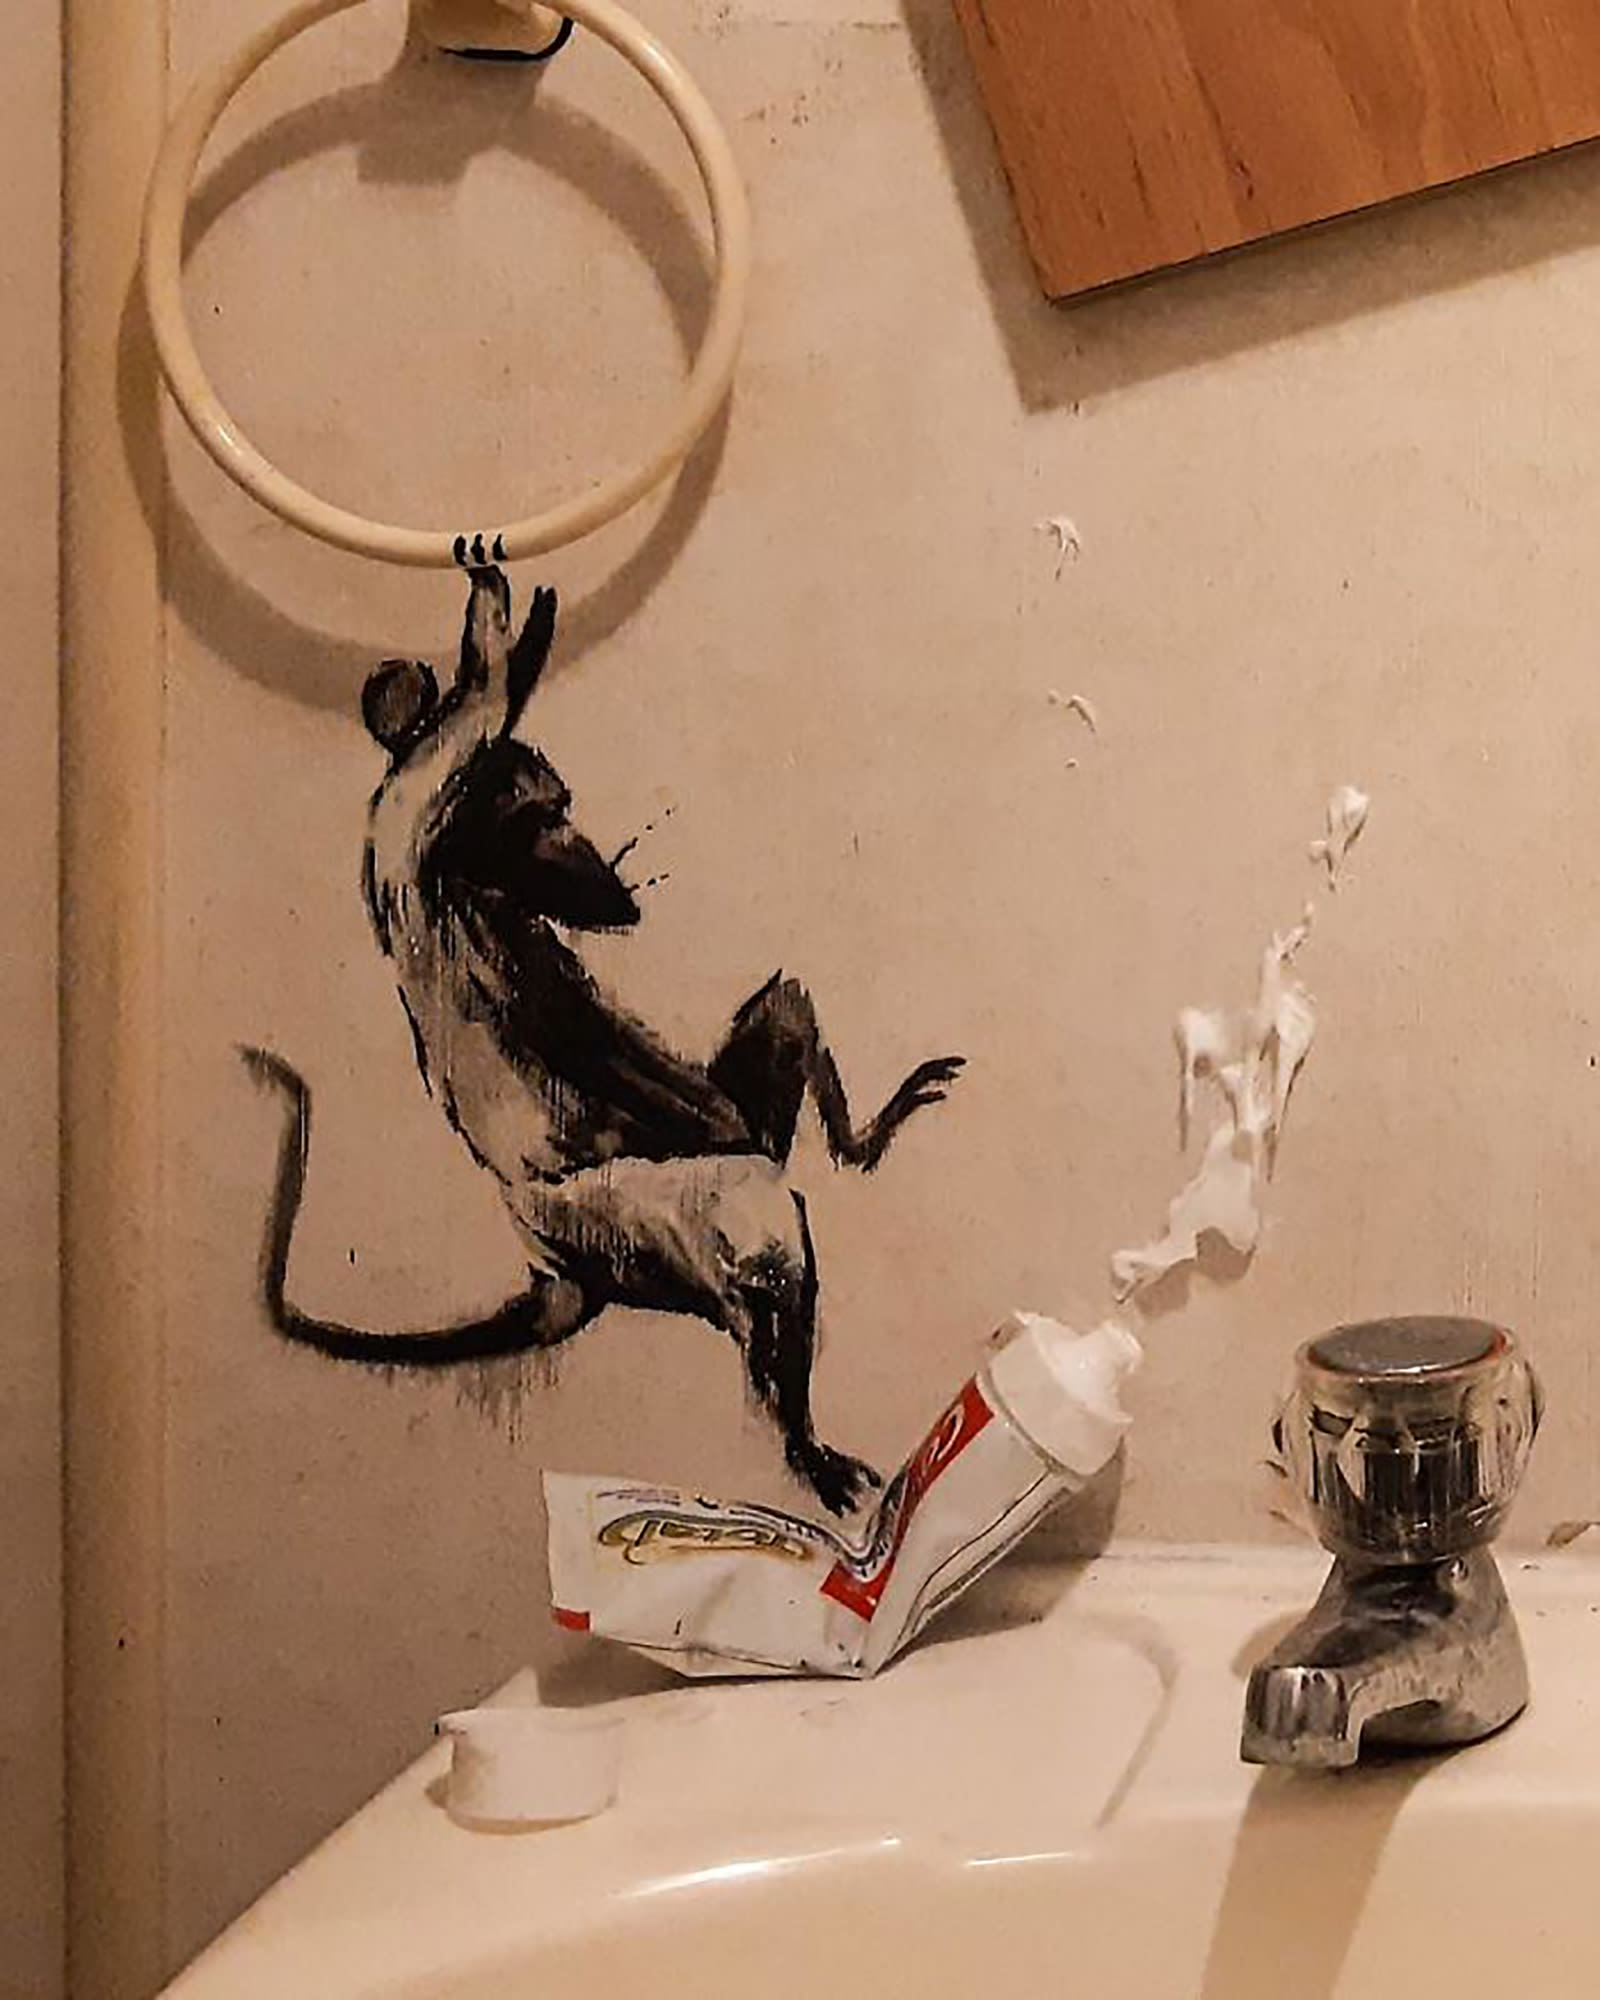 شاهد رسومات بانكسي على جدران حمام منزله